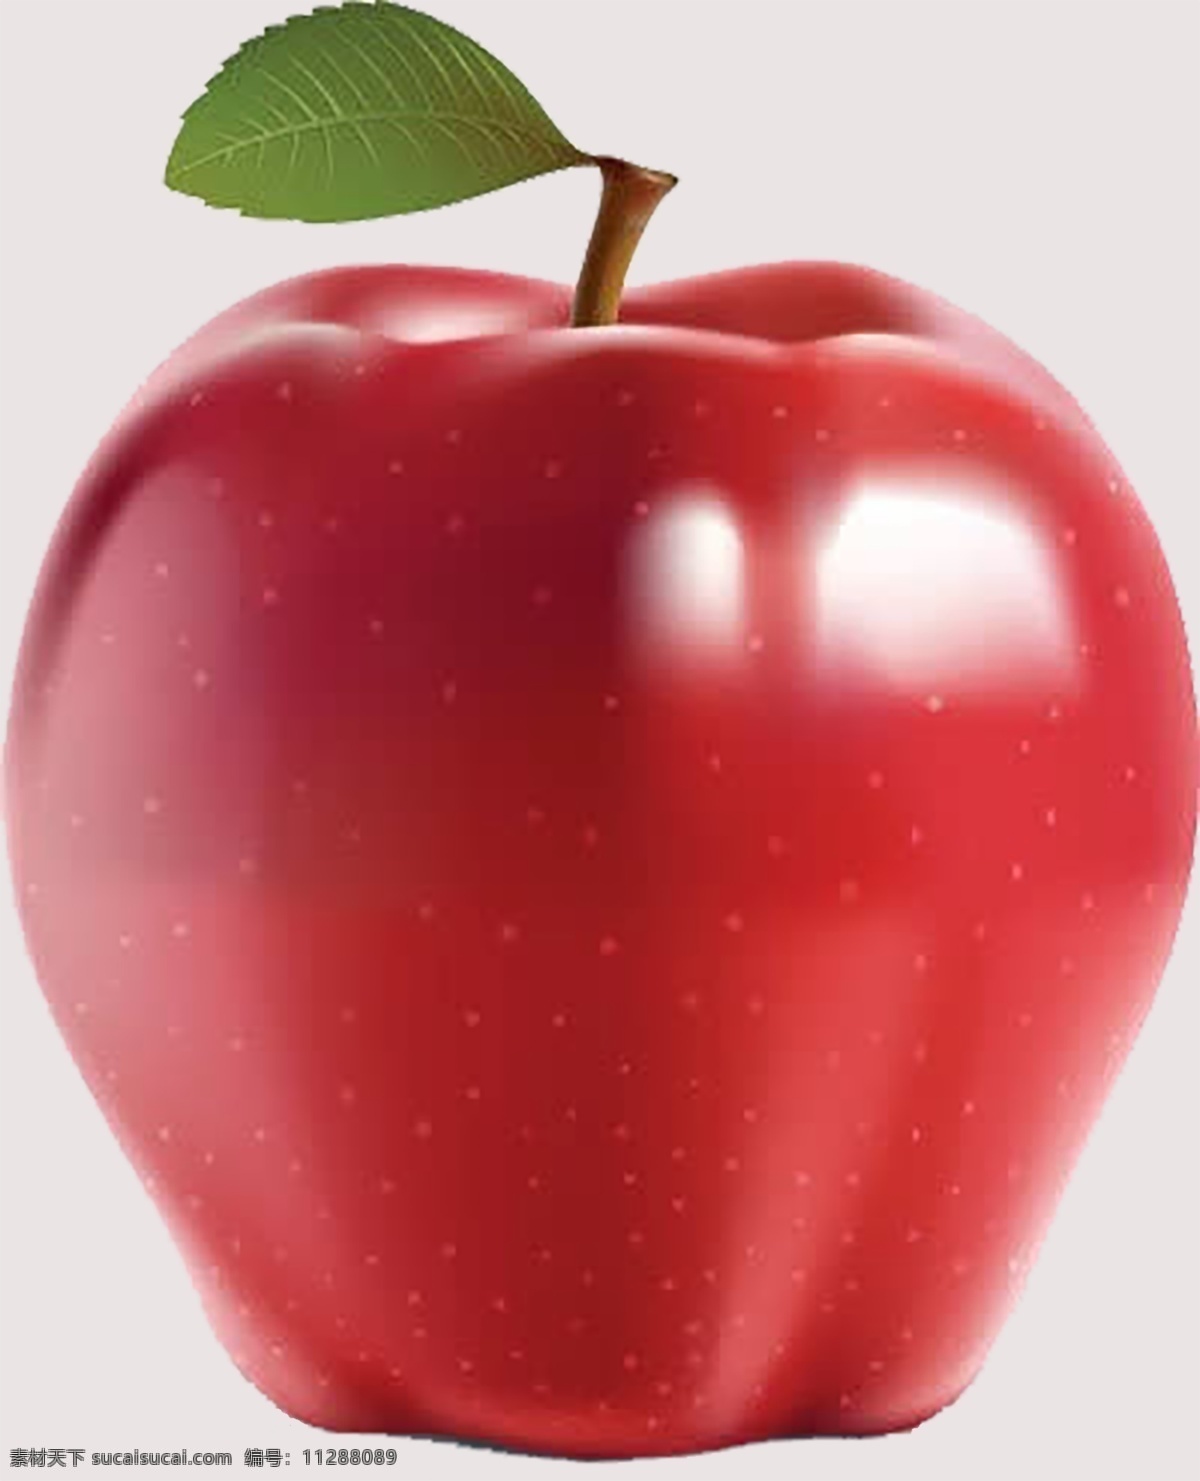 苹果水果 水果 水果素材 苹果 红苹果 鲜苹果 苹果免扣 免扣苹果